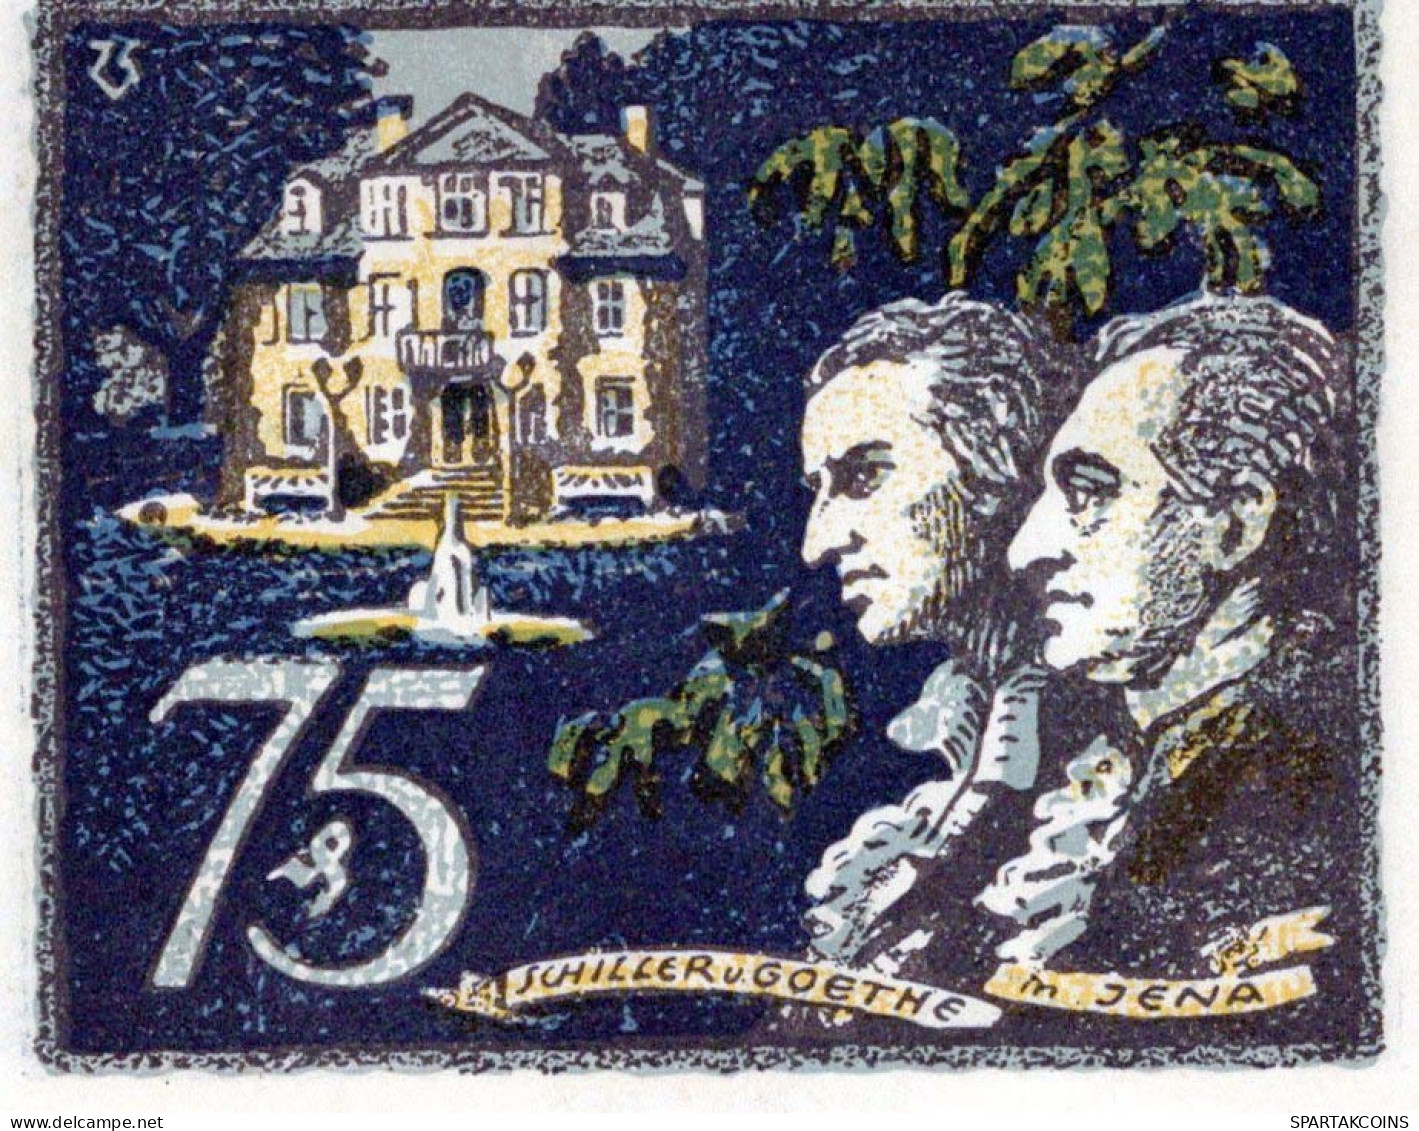 75 PFENNIG 1921 Stadt JENA Thuringia UNC DEUTSCHLAND Notgeld Banknote #PH710 - [11] Local Banknote Issues